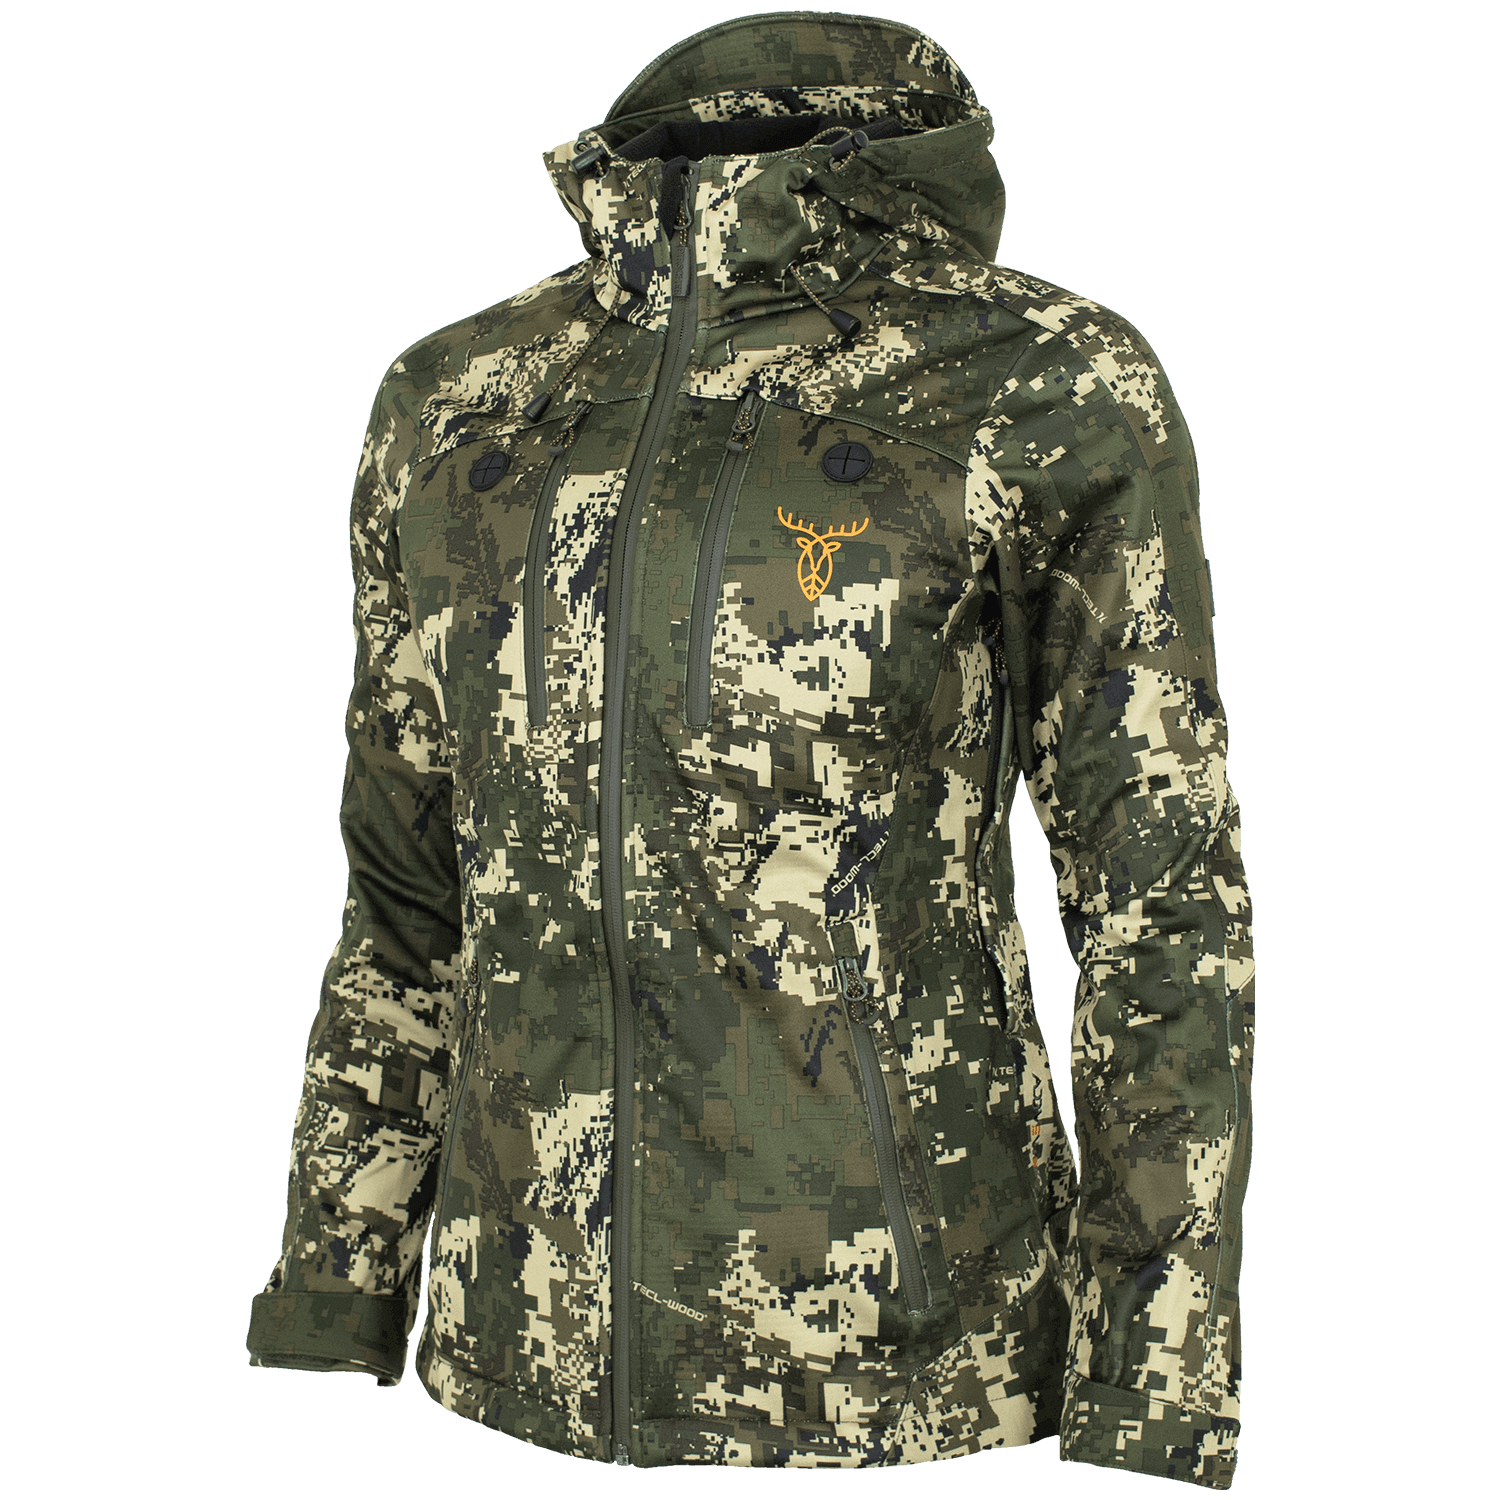 Pirscher Gear Allseason Ladies Jacket (Optimax) - Hunting Jackets